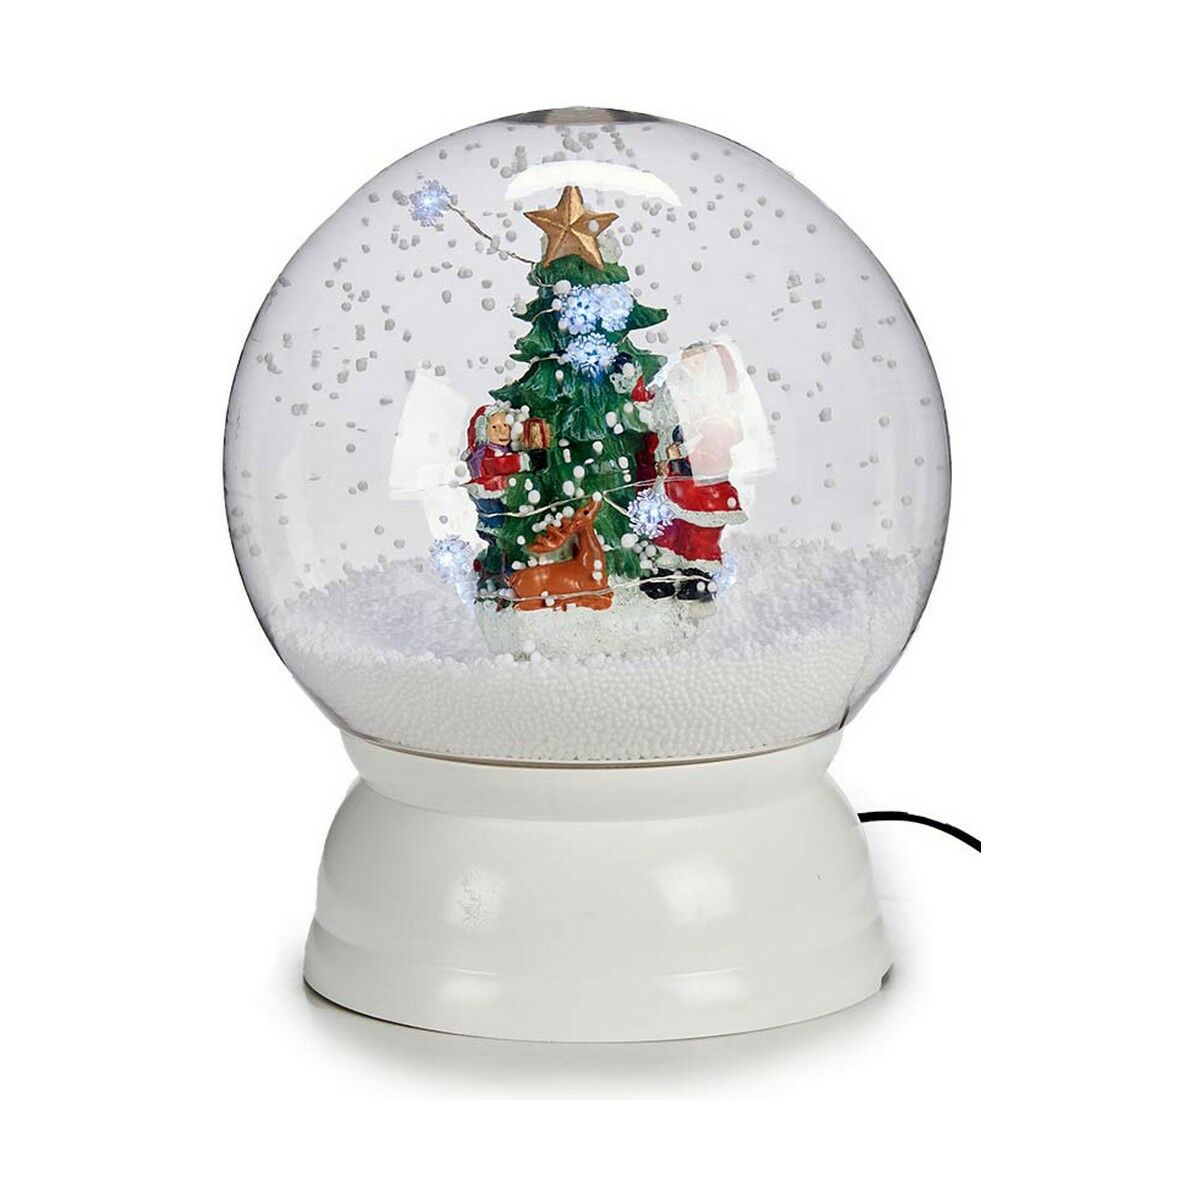 Snowball Christmas Tree 22 x 27 cm White Plastic